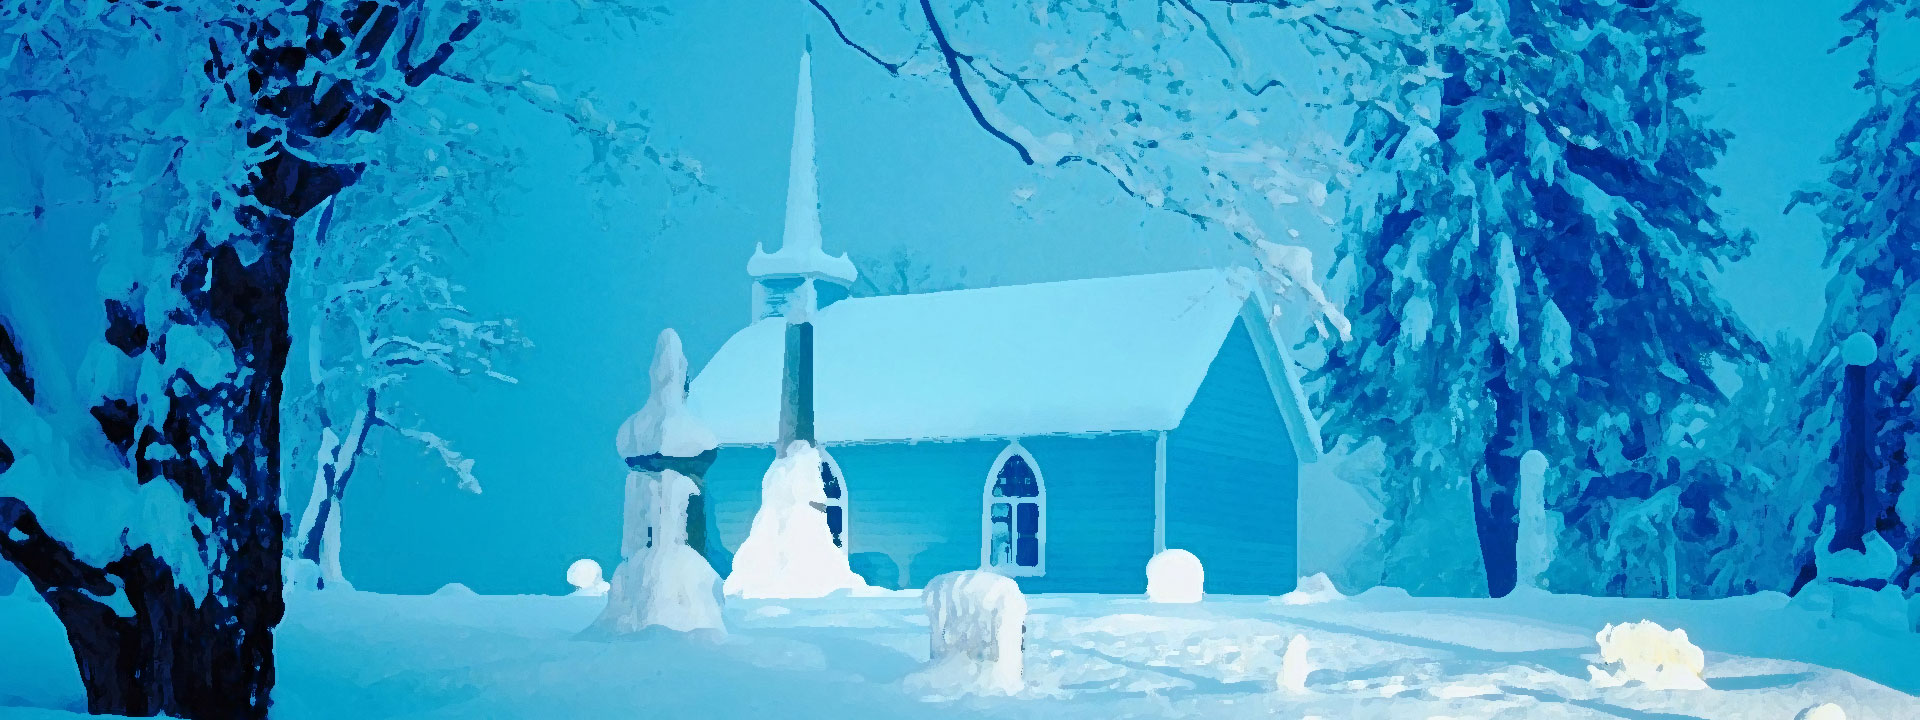 Imagem do podcast TESTE 3 do RPG Next - Igreja solitária cheia de neve